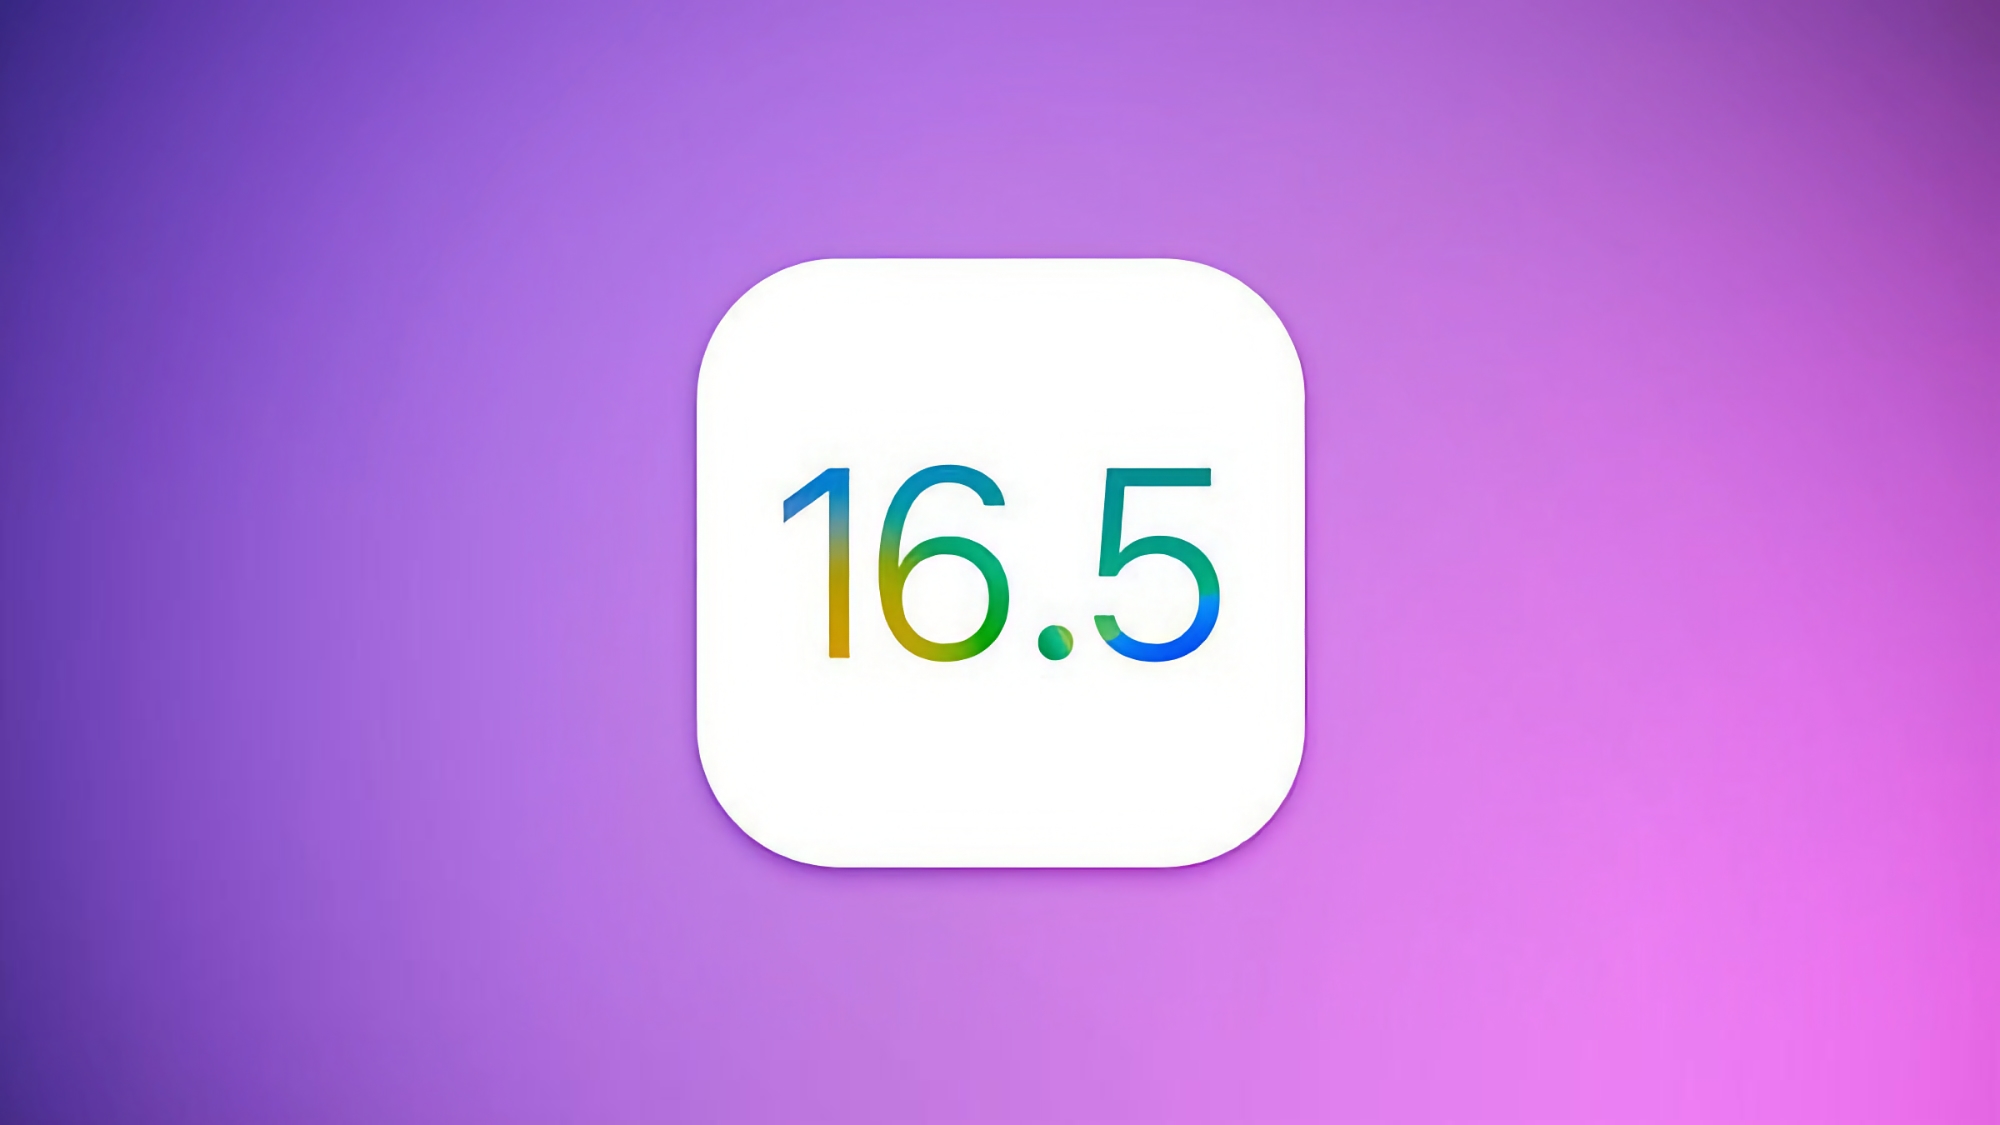 Apple випустила передрелізну версію iOS 16.5